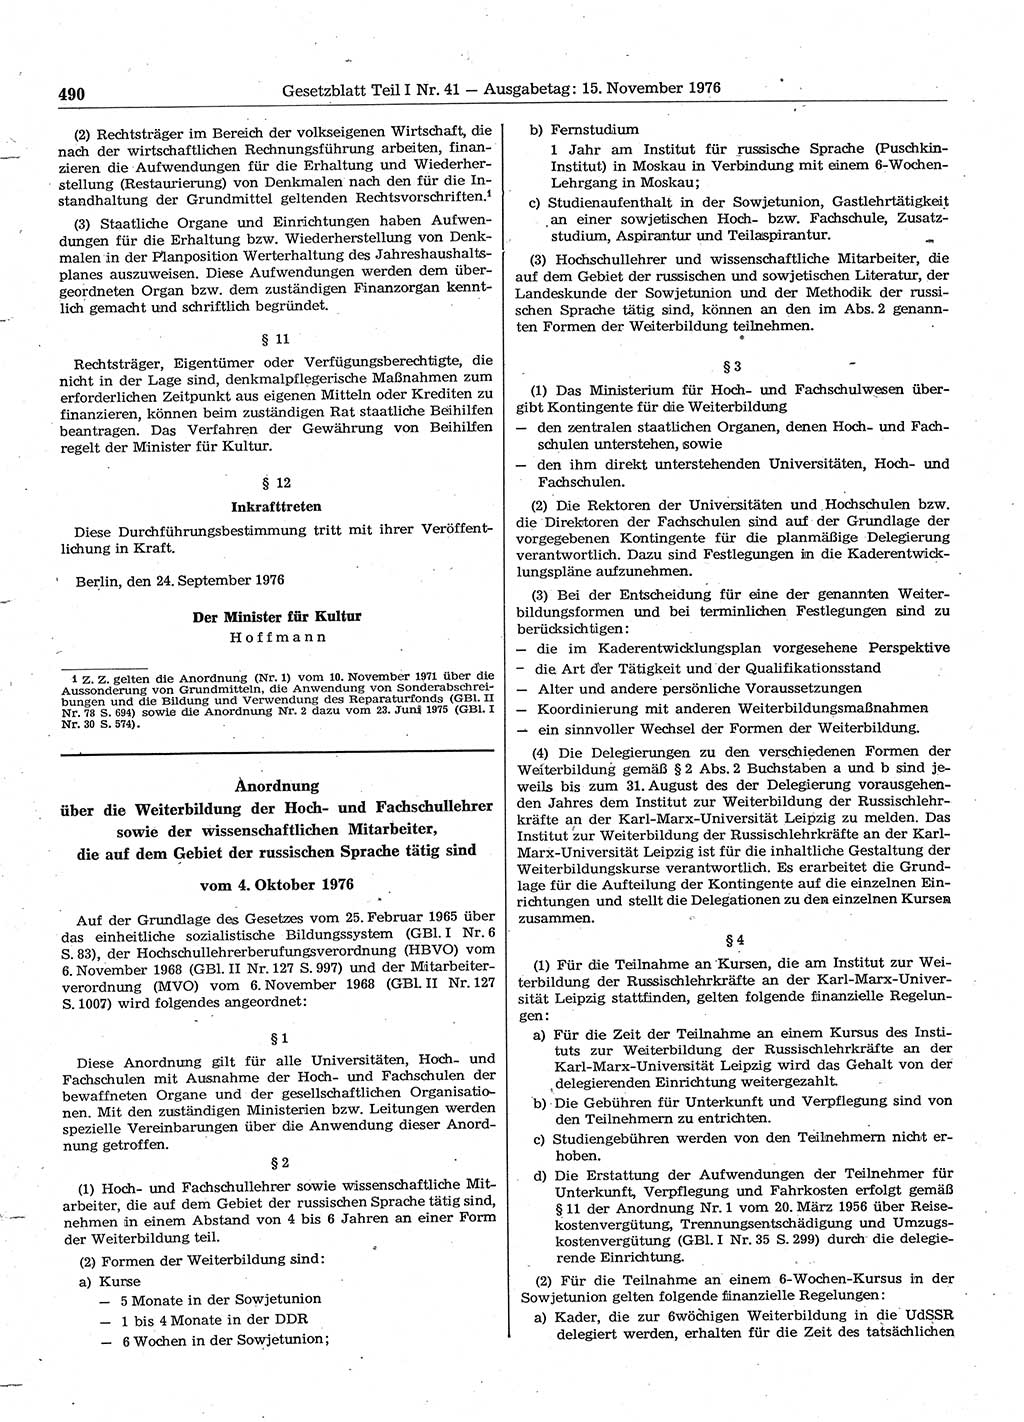 Gesetzblatt (GBl.) der Deutschen Demokratischen Republik (DDR) Teil Ⅰ 1976, Seite 490 (GBl. DDR Ⅰ 1976, S. 490)